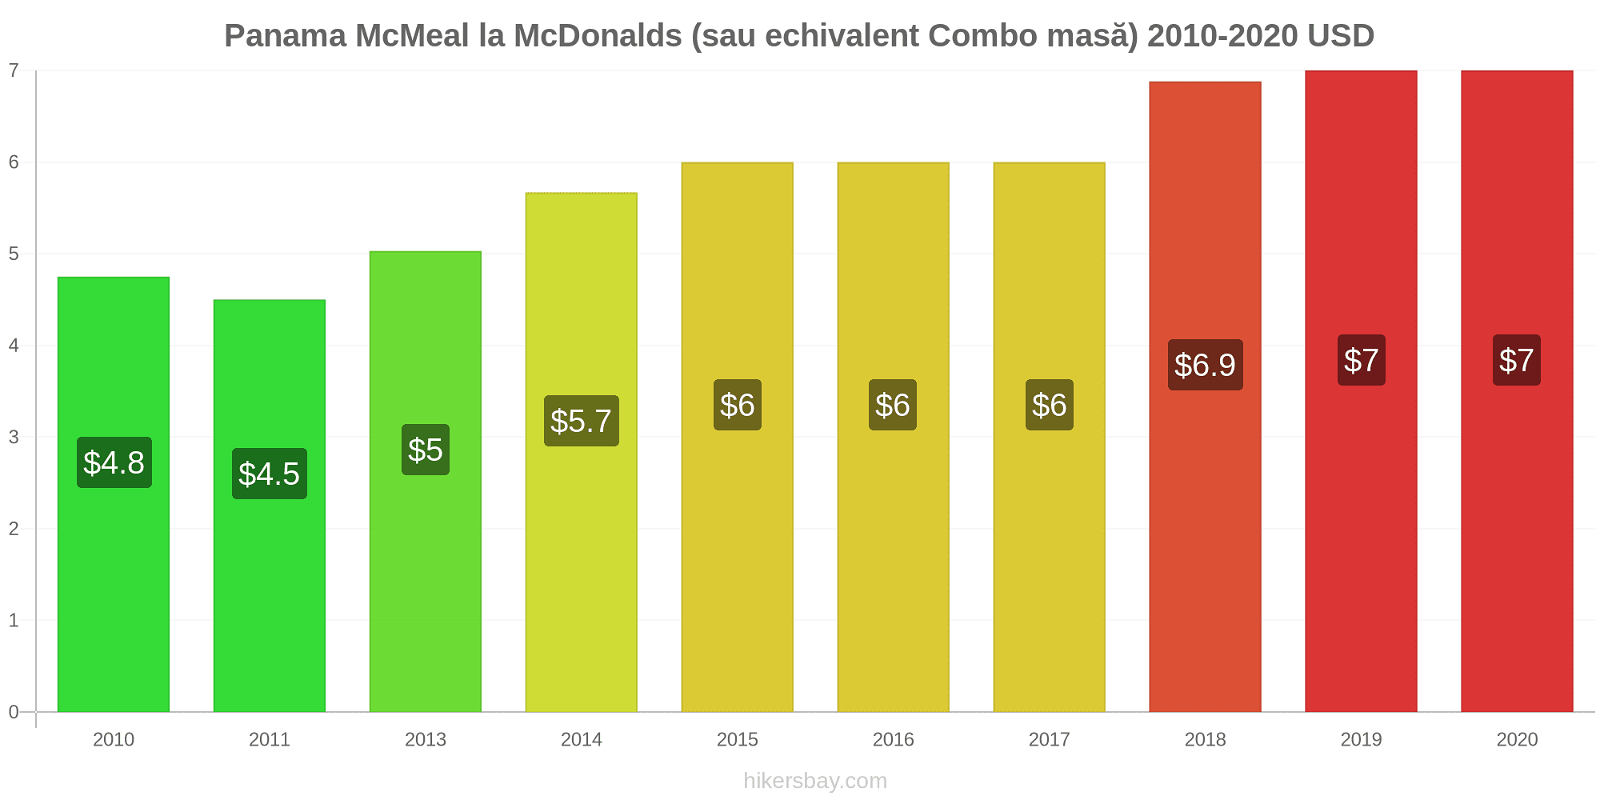 Panama modificări de preț McMeal la McDonalds (sau echivalent Combo masă) hikersbay.com